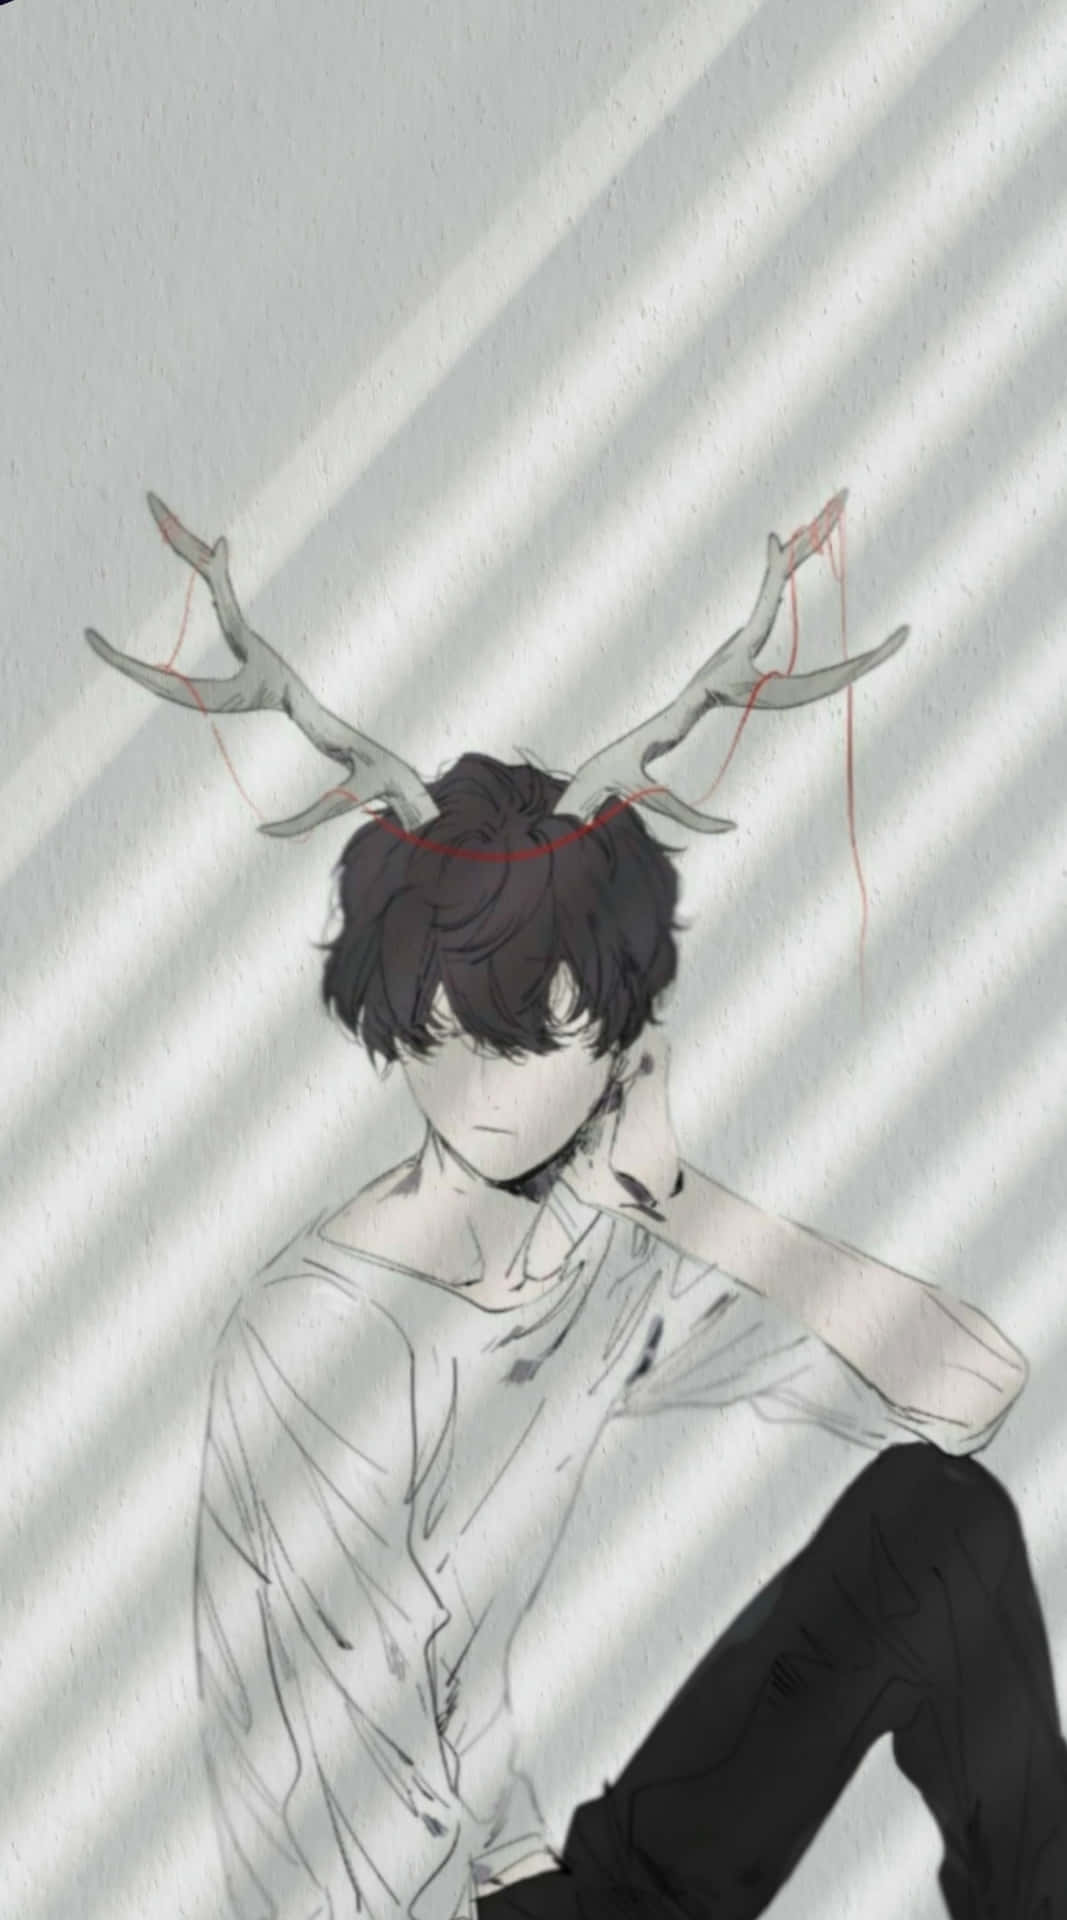 Cute Aesthetic Anime Long Horns Wallpaper